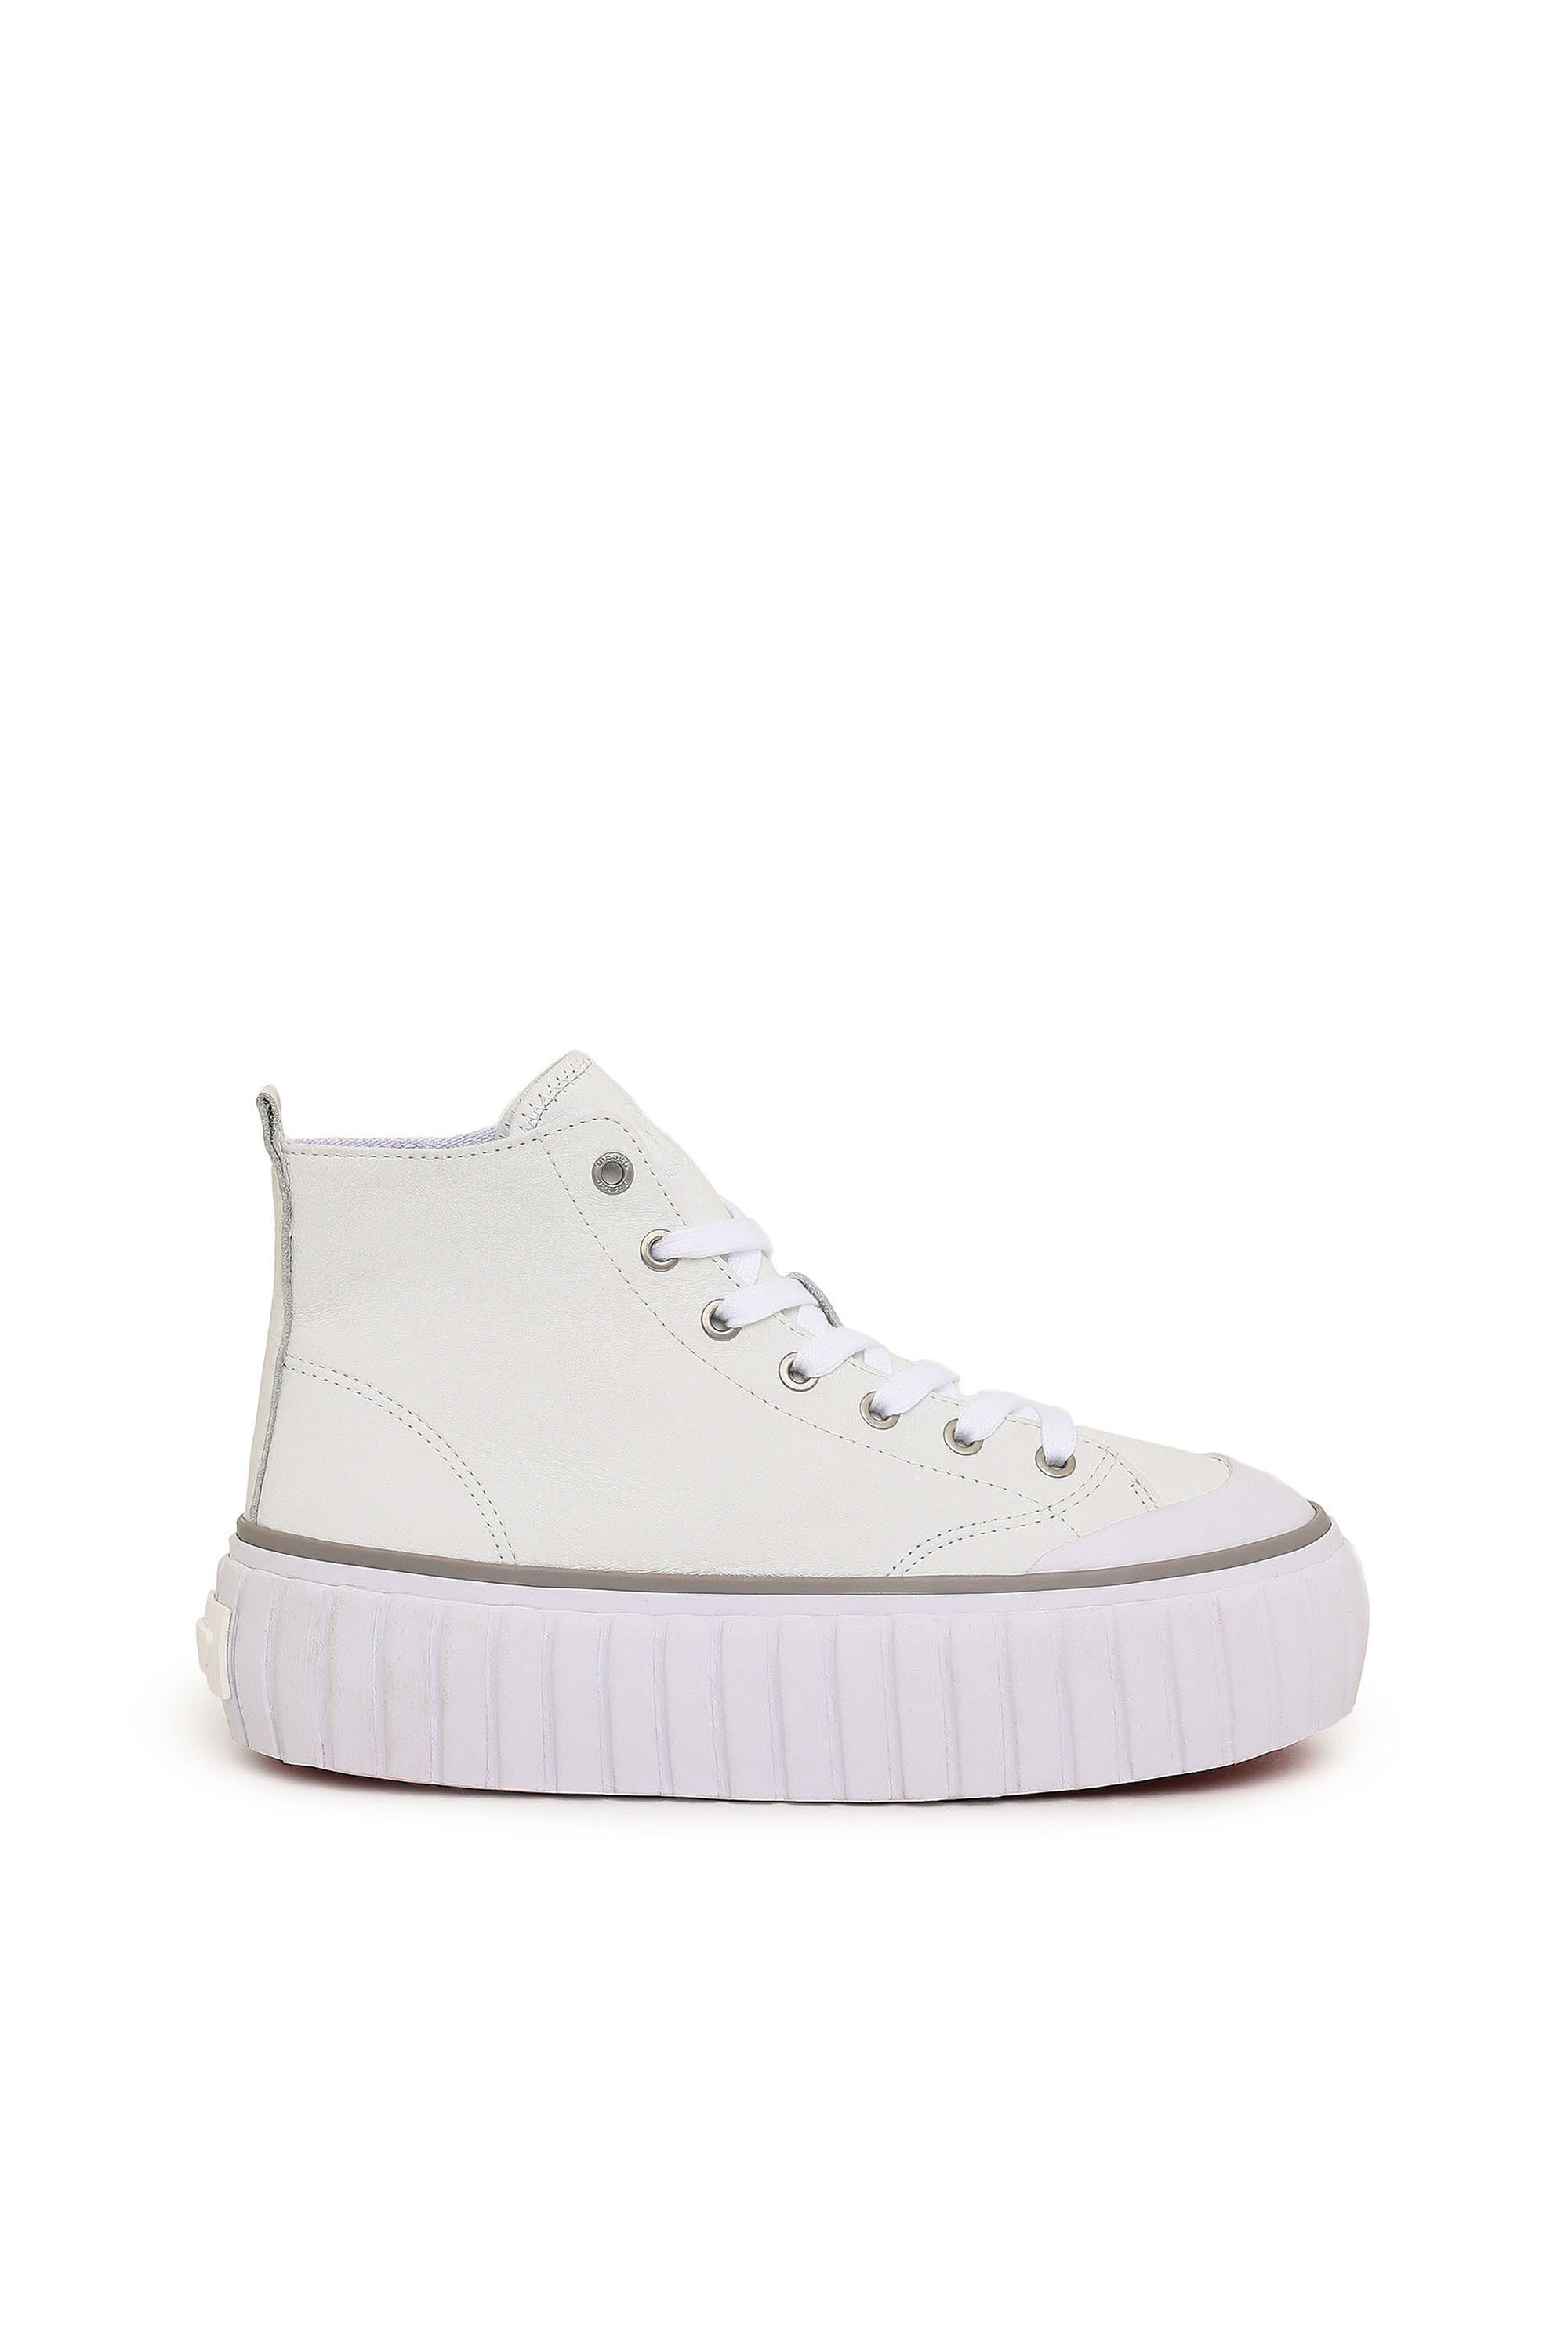 Diesel - S-Hanami Mid X - High-top platform sneakers in leather - Sneakers - Woman - White